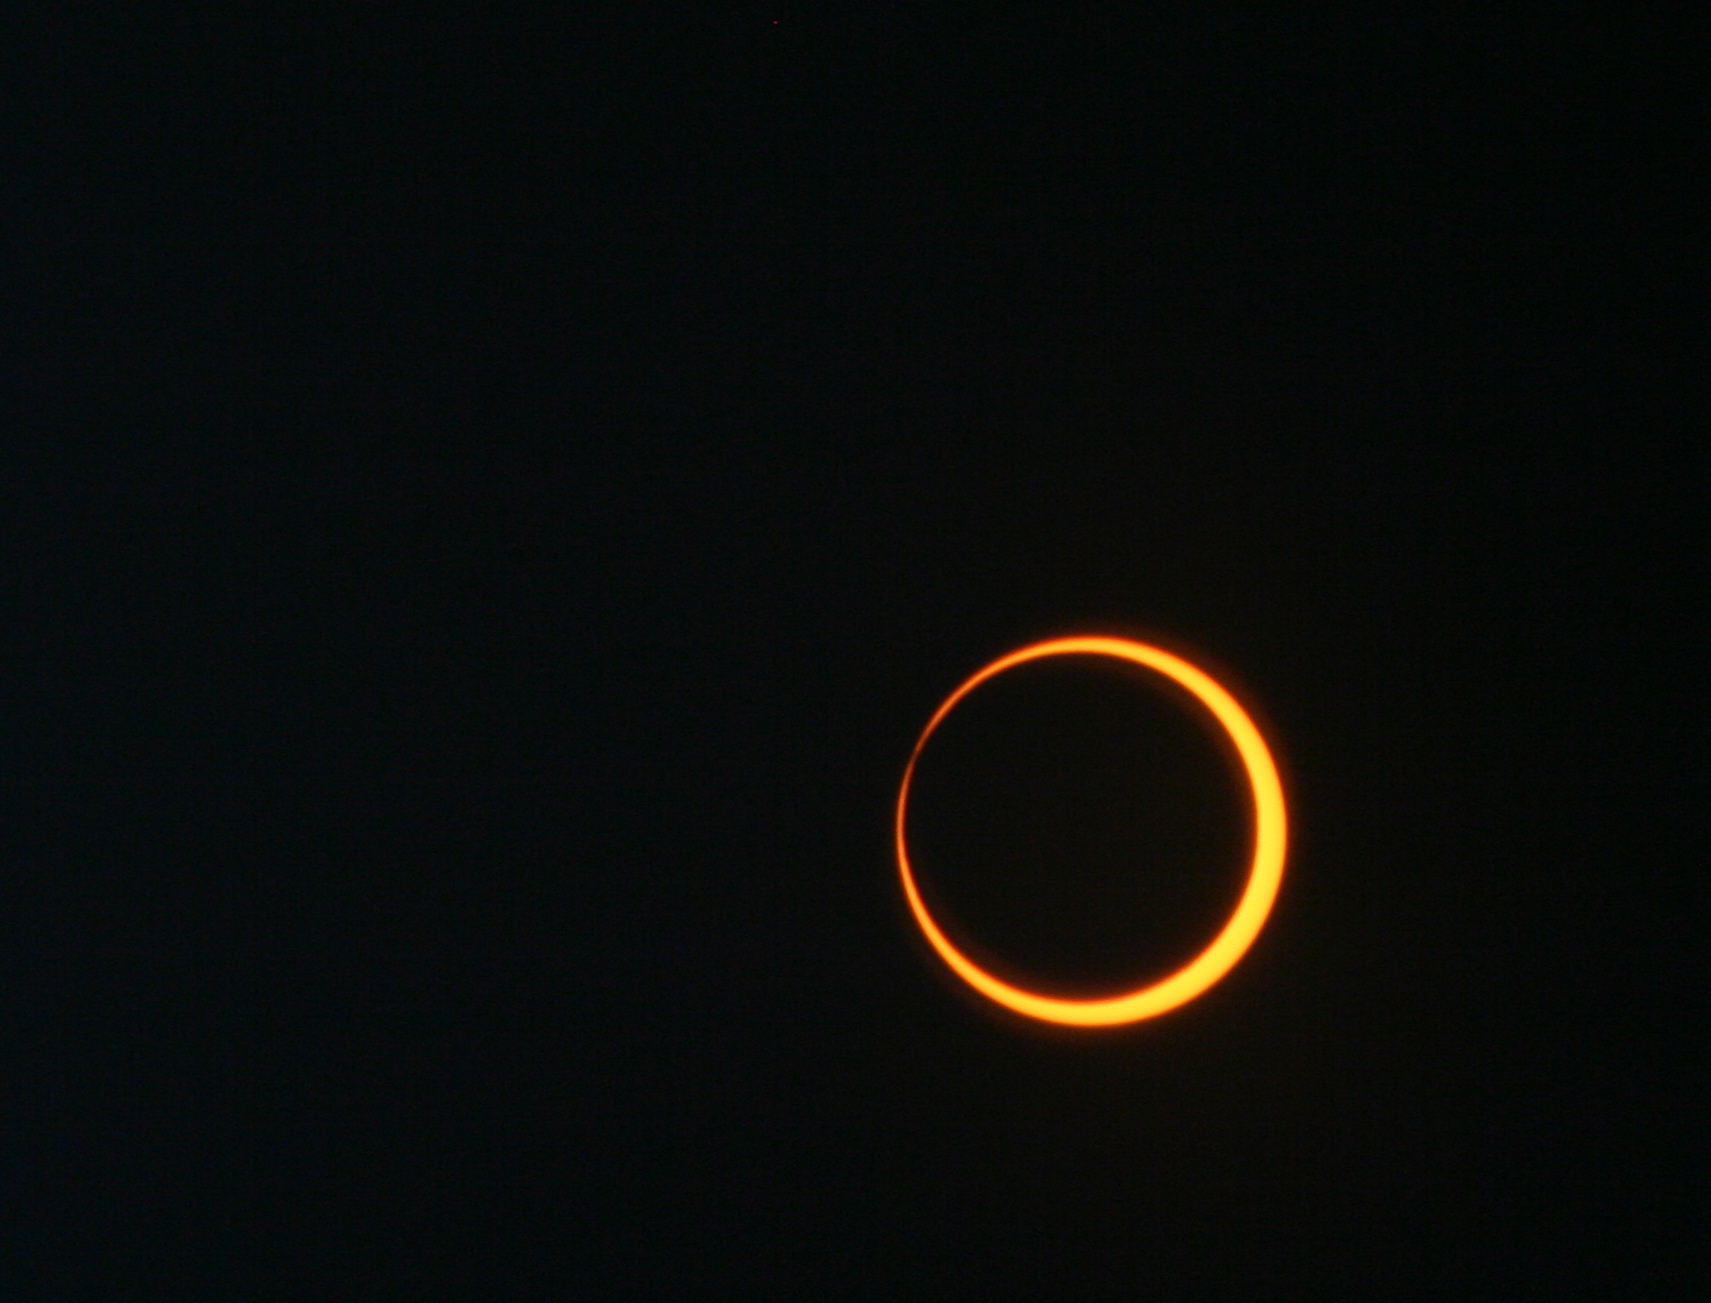 Un eclipse anular solar fotografiado el 20 de mayo de 2012. El Sol, un disco anaranjado brillante, en la esquina inferior derecha de la imagen, está siendo cubierto por un disco negro, la Luna.